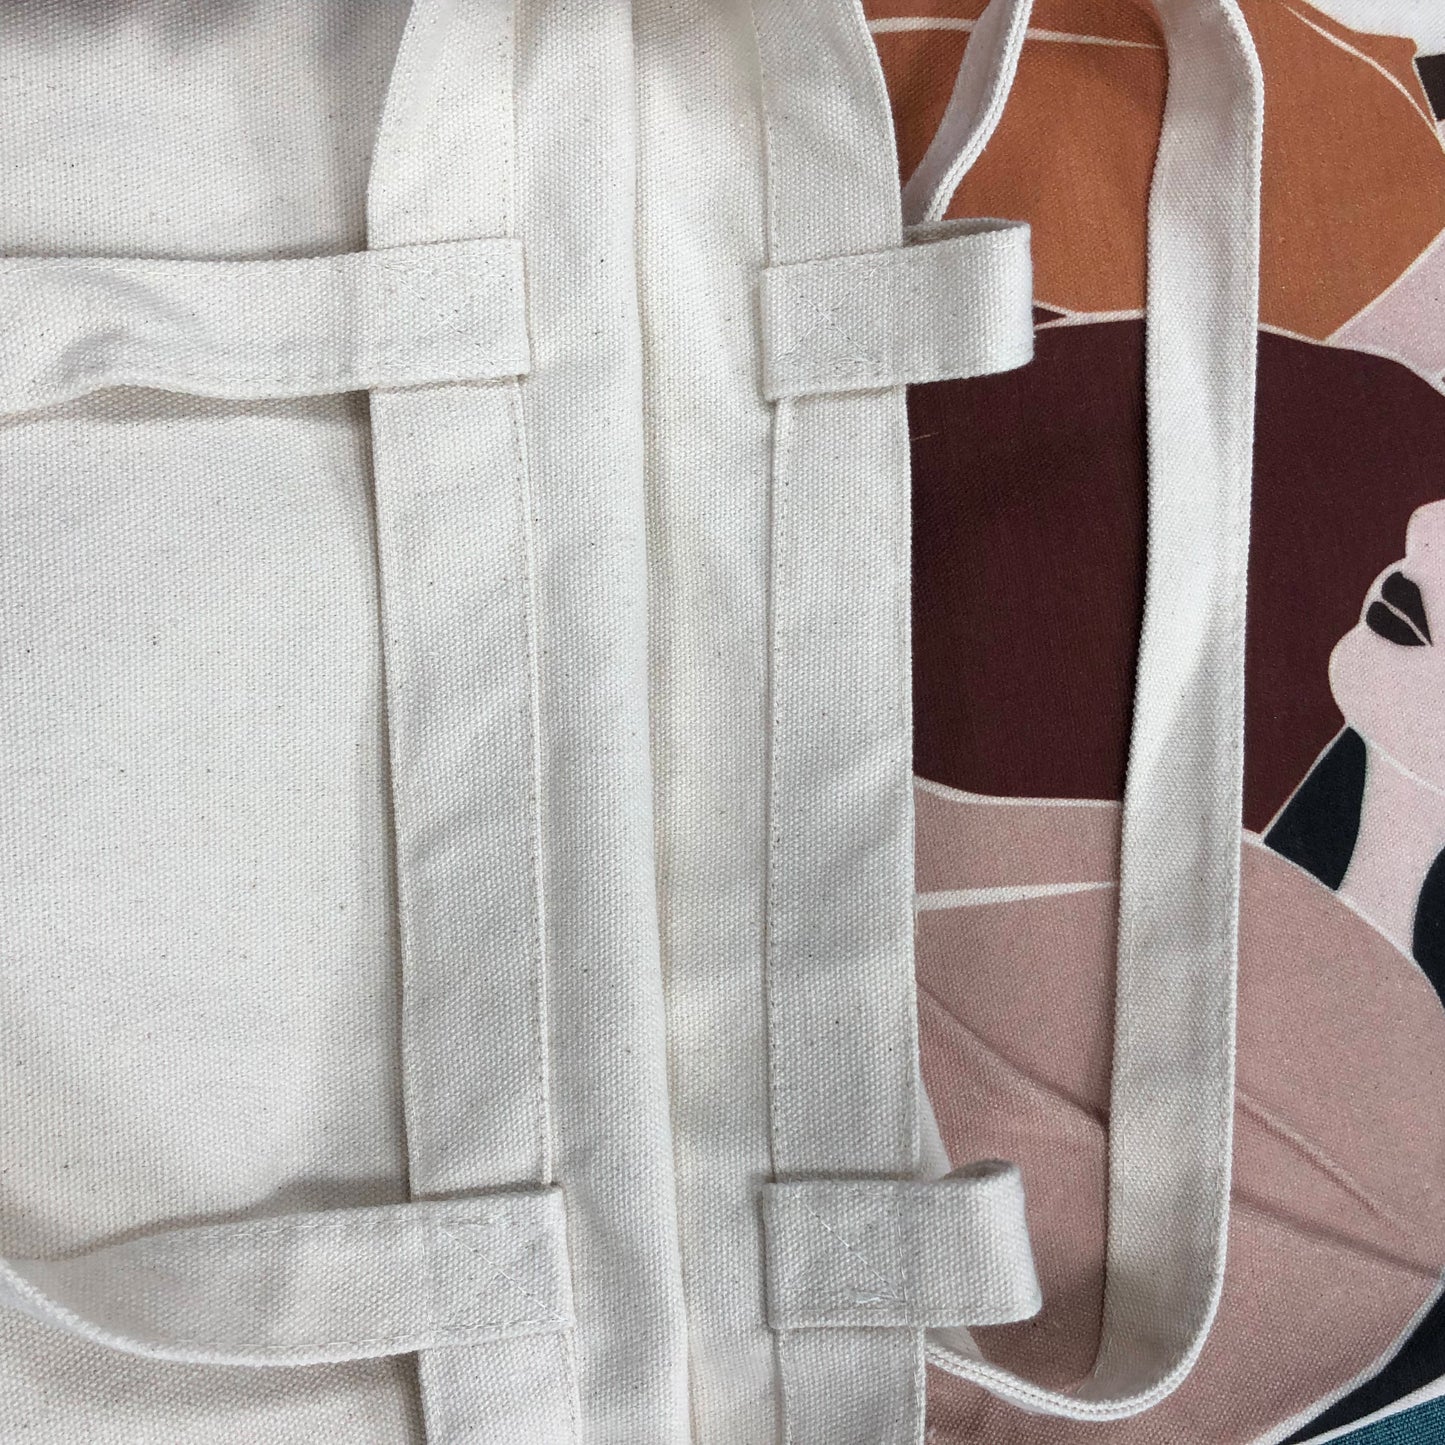 Uniqueness - Cotton Shopping Bags (100% Cotton)